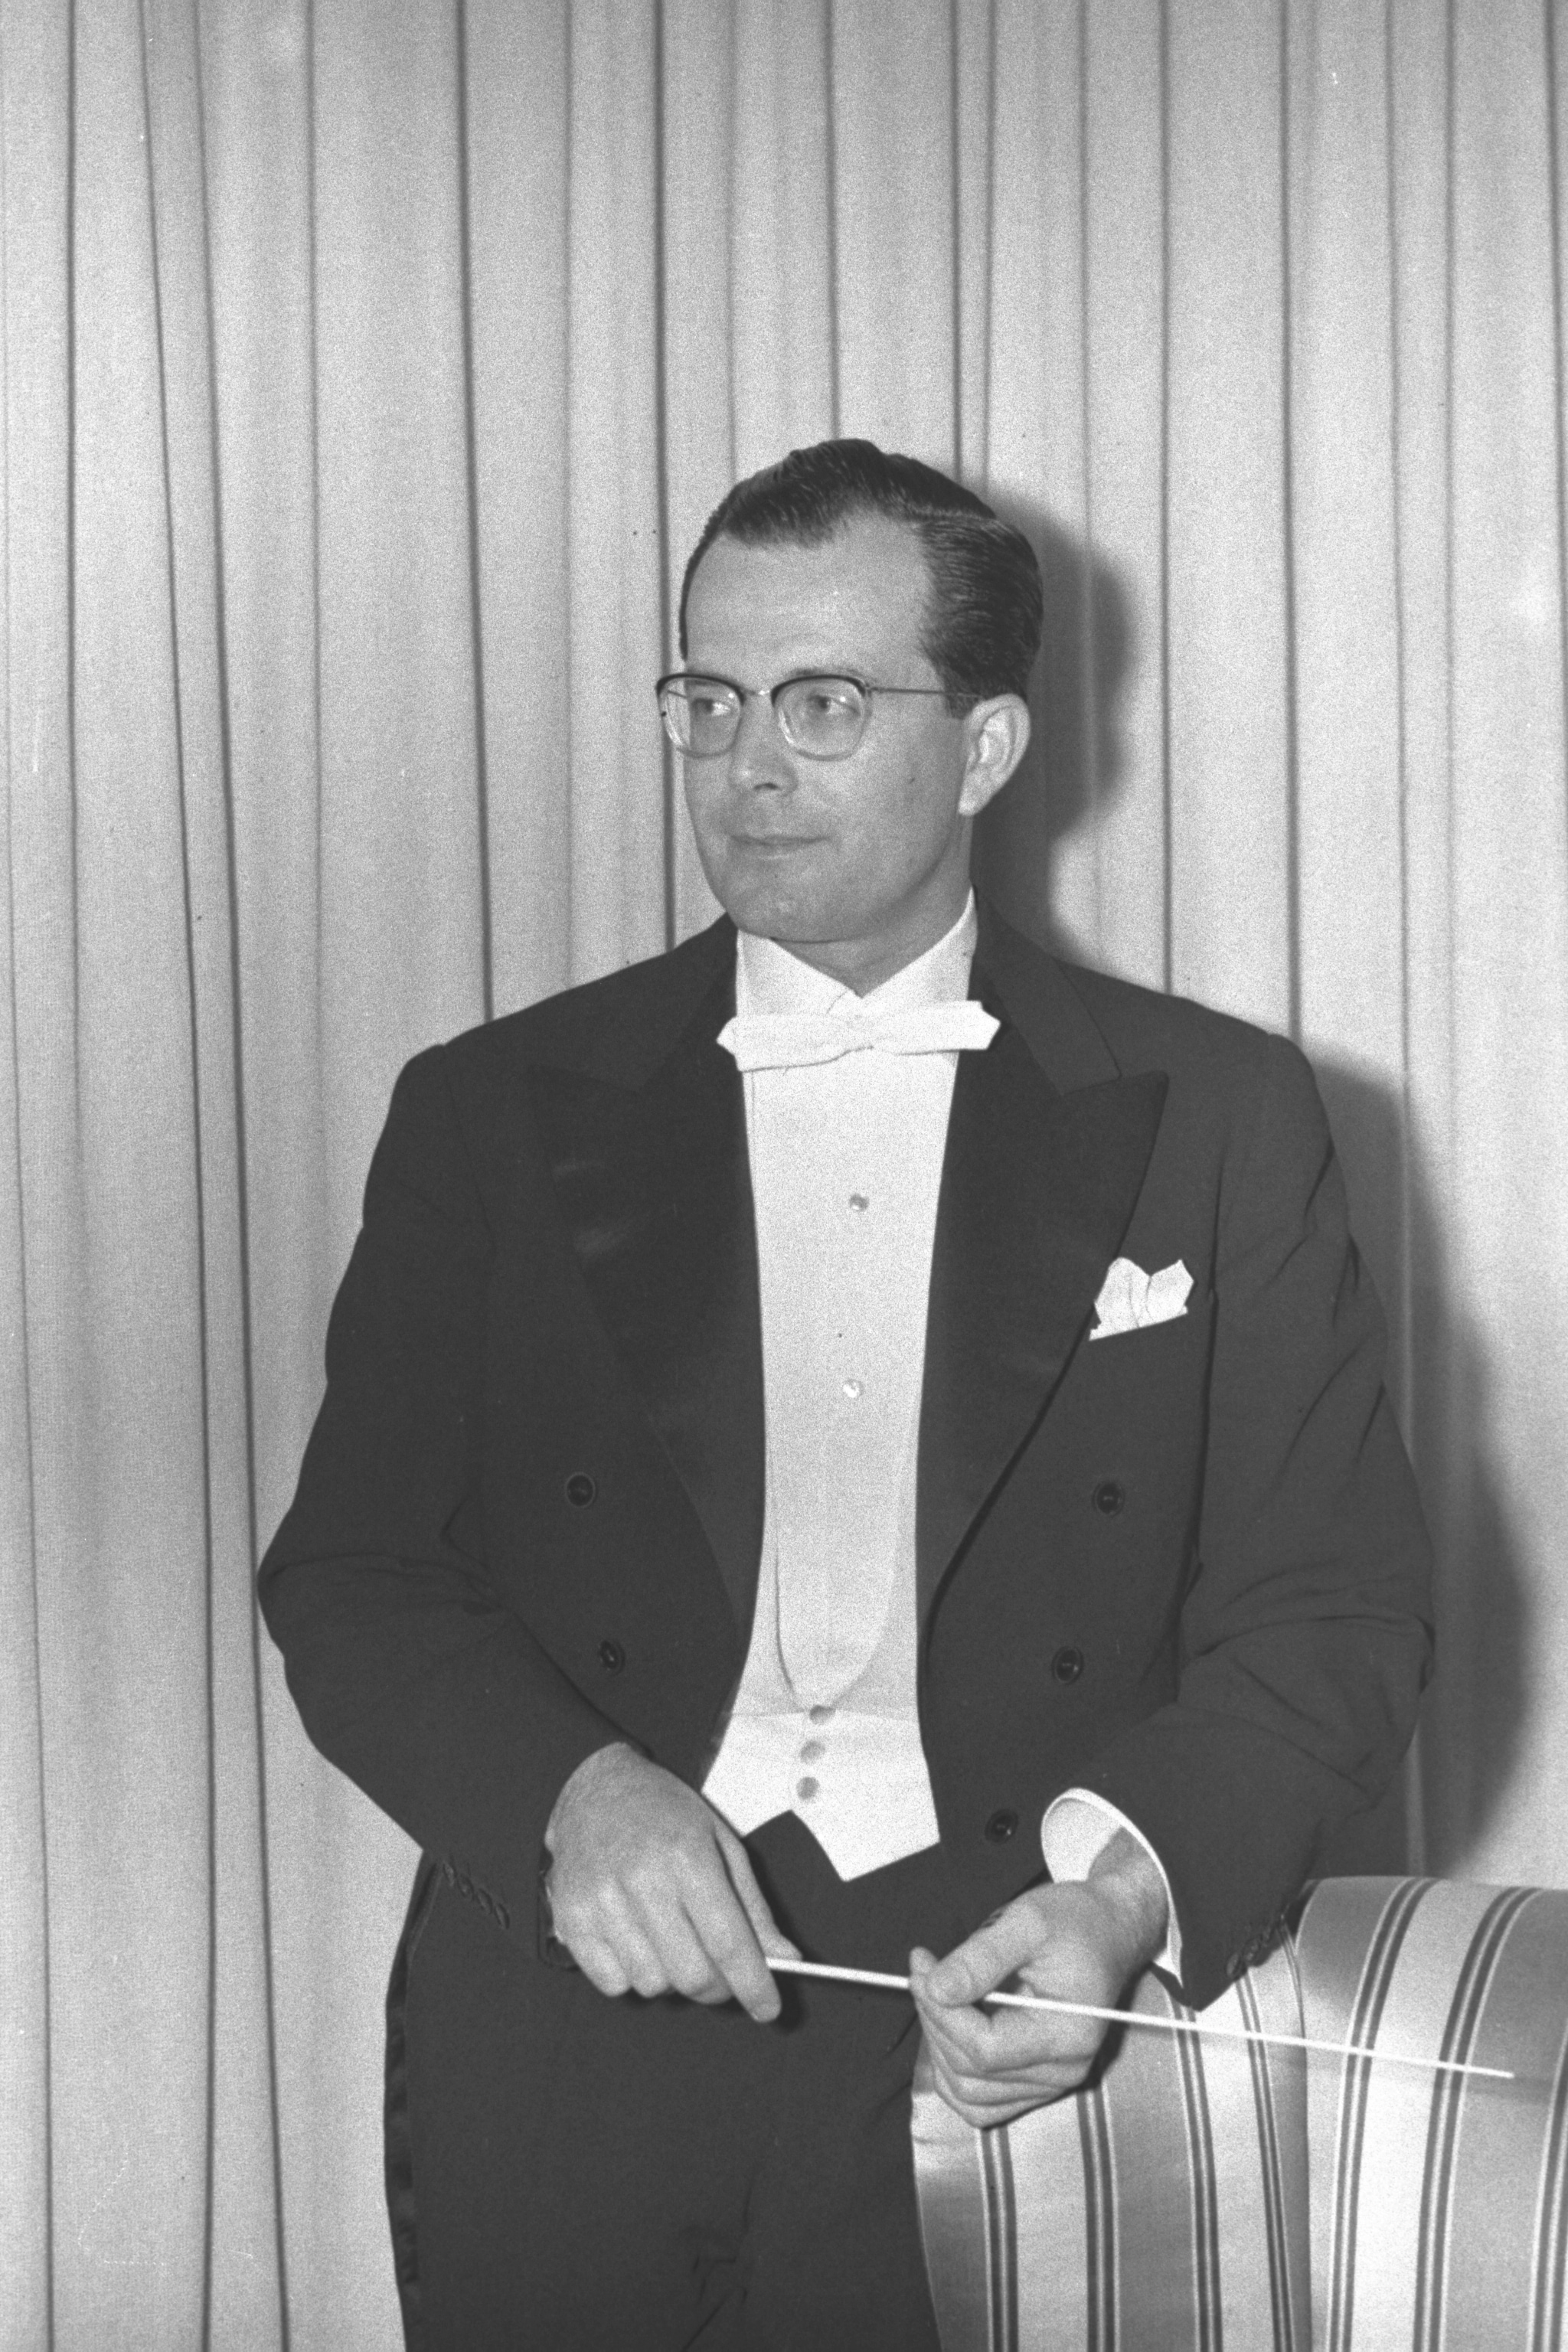 Wolfgang Sawallisch in una foto del 1955. Dalle Teche Rai